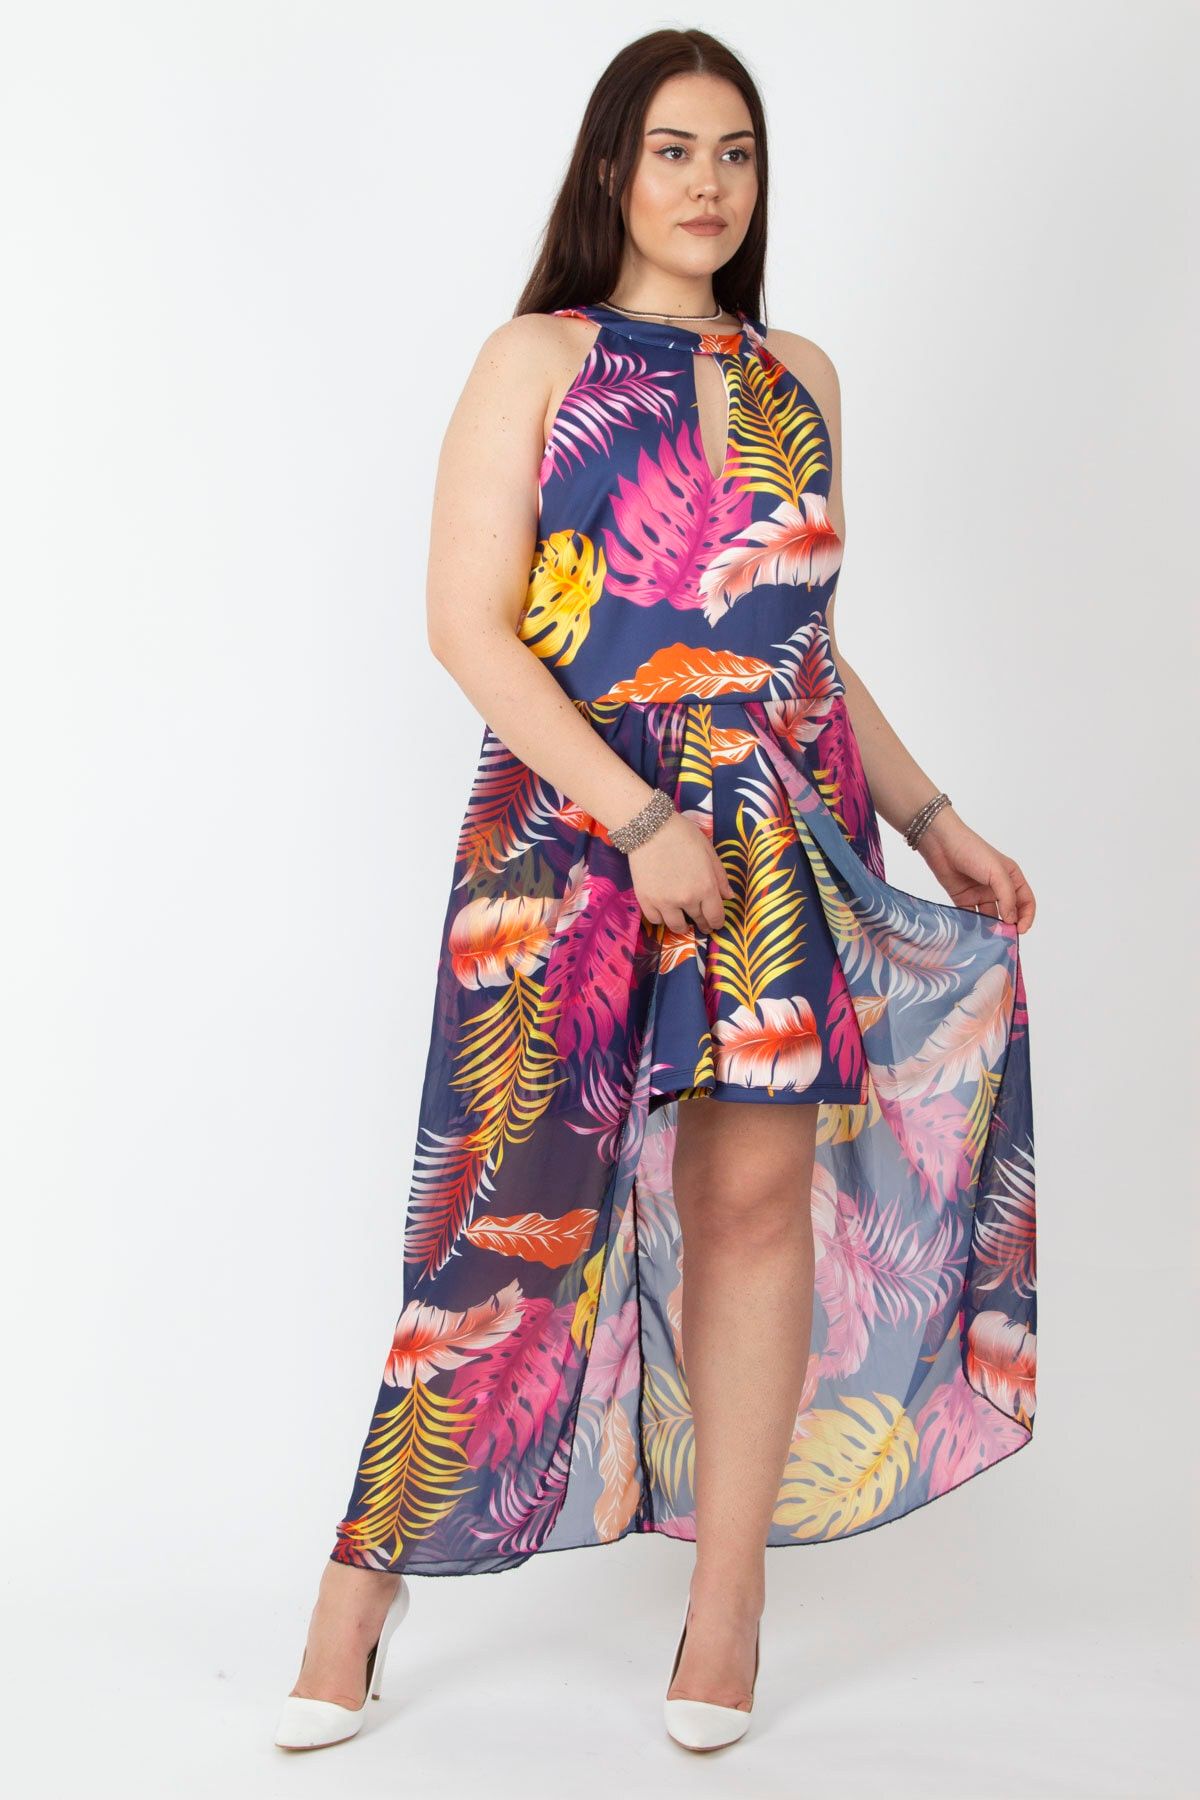 Şans Tekstil Kadın Renkli Etek Kısmı Şifon Detaylı Şort Tulum 65n18136 26a18136